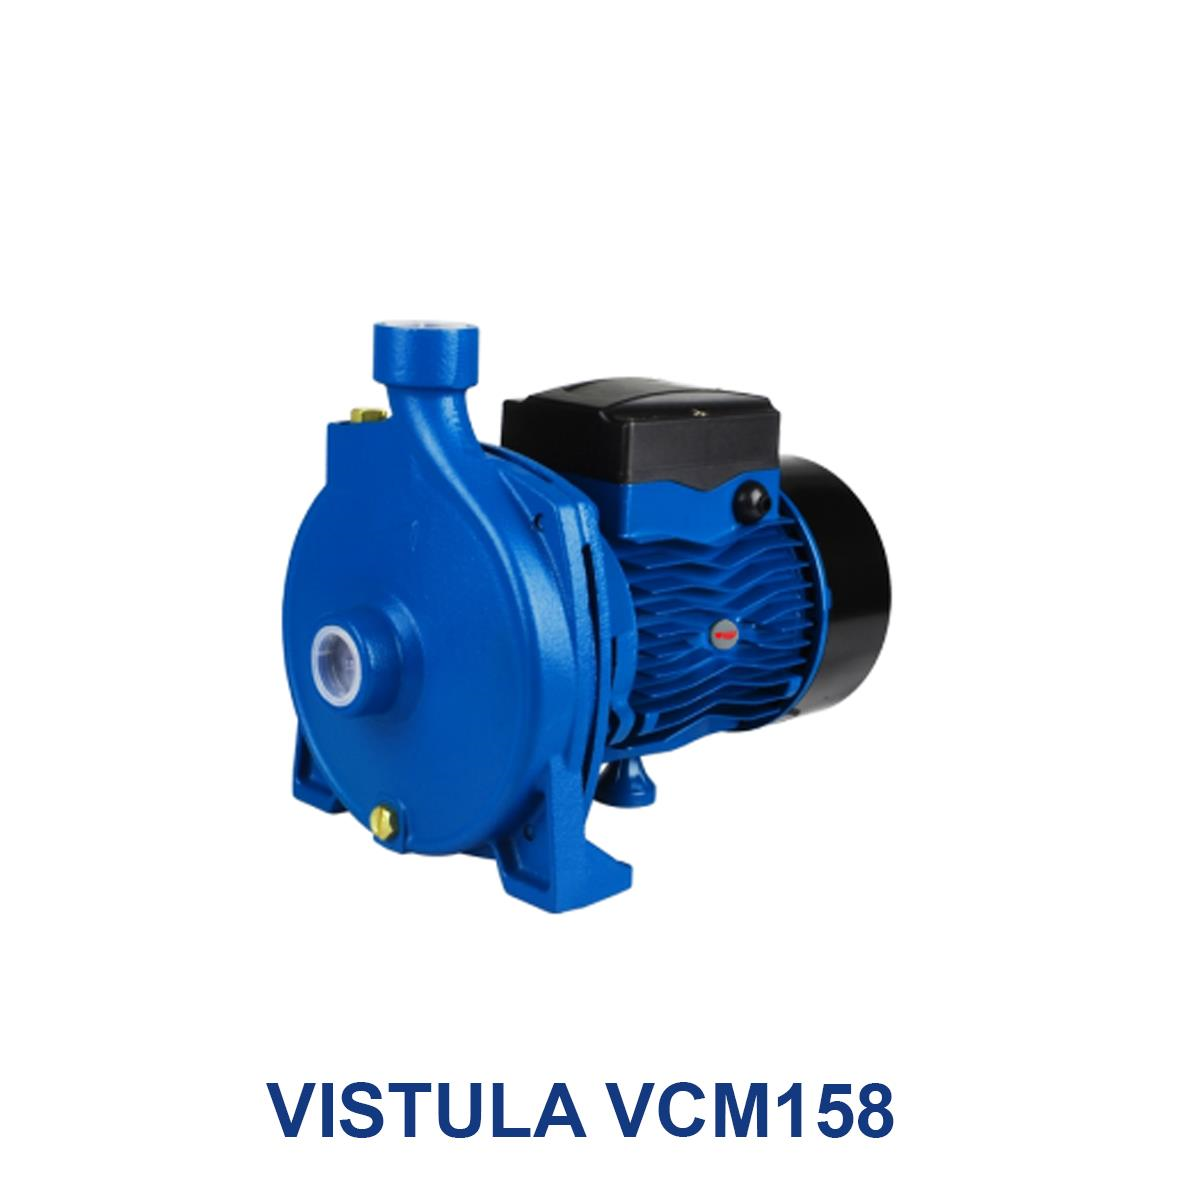 VISTULA-VCM158